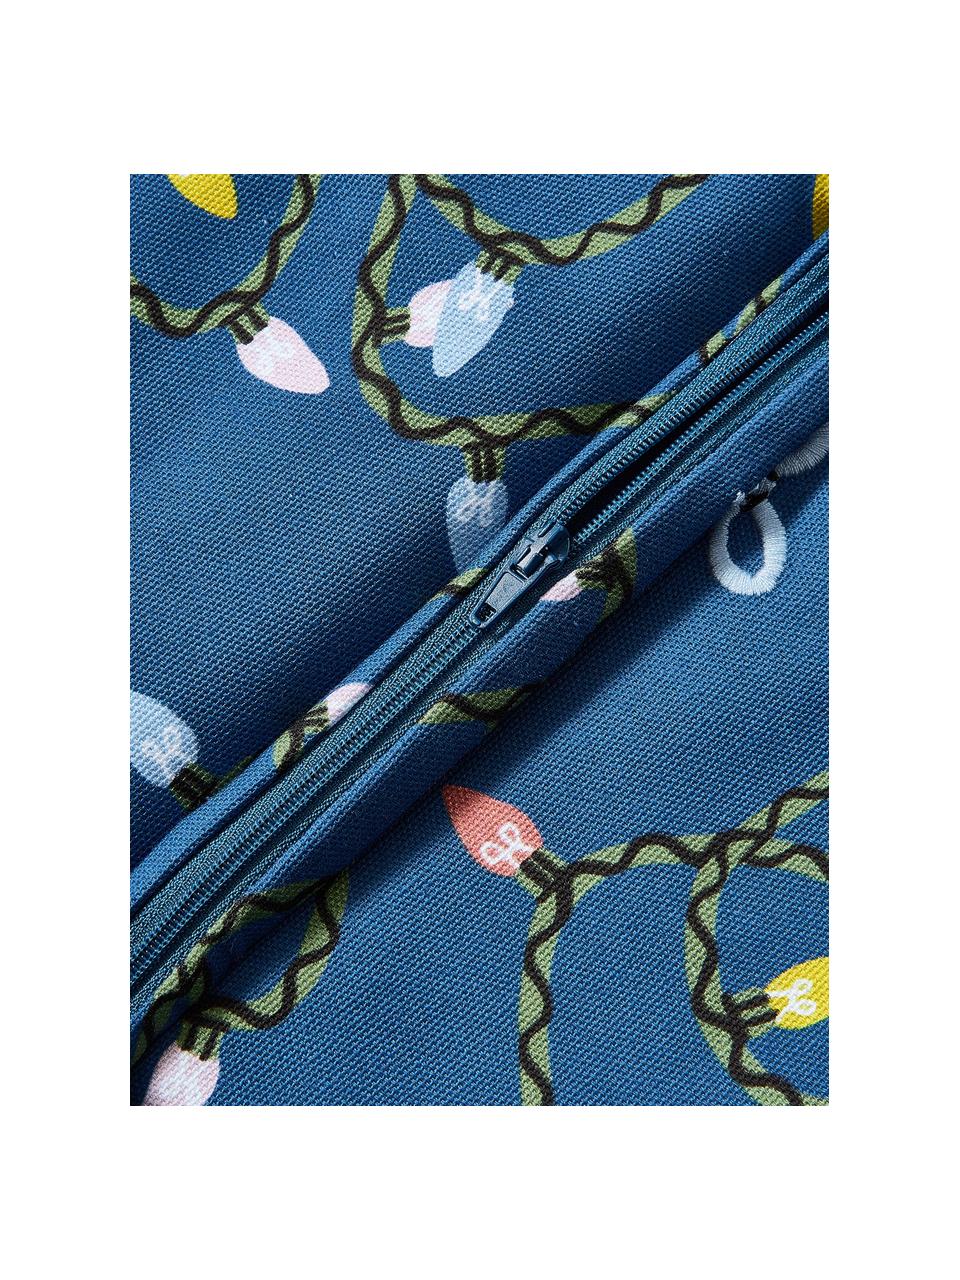 Poszewka na poduszkę Ribbons, 100% bawełna, Niebieski, wielobarwny, S 45 x D 45 cm